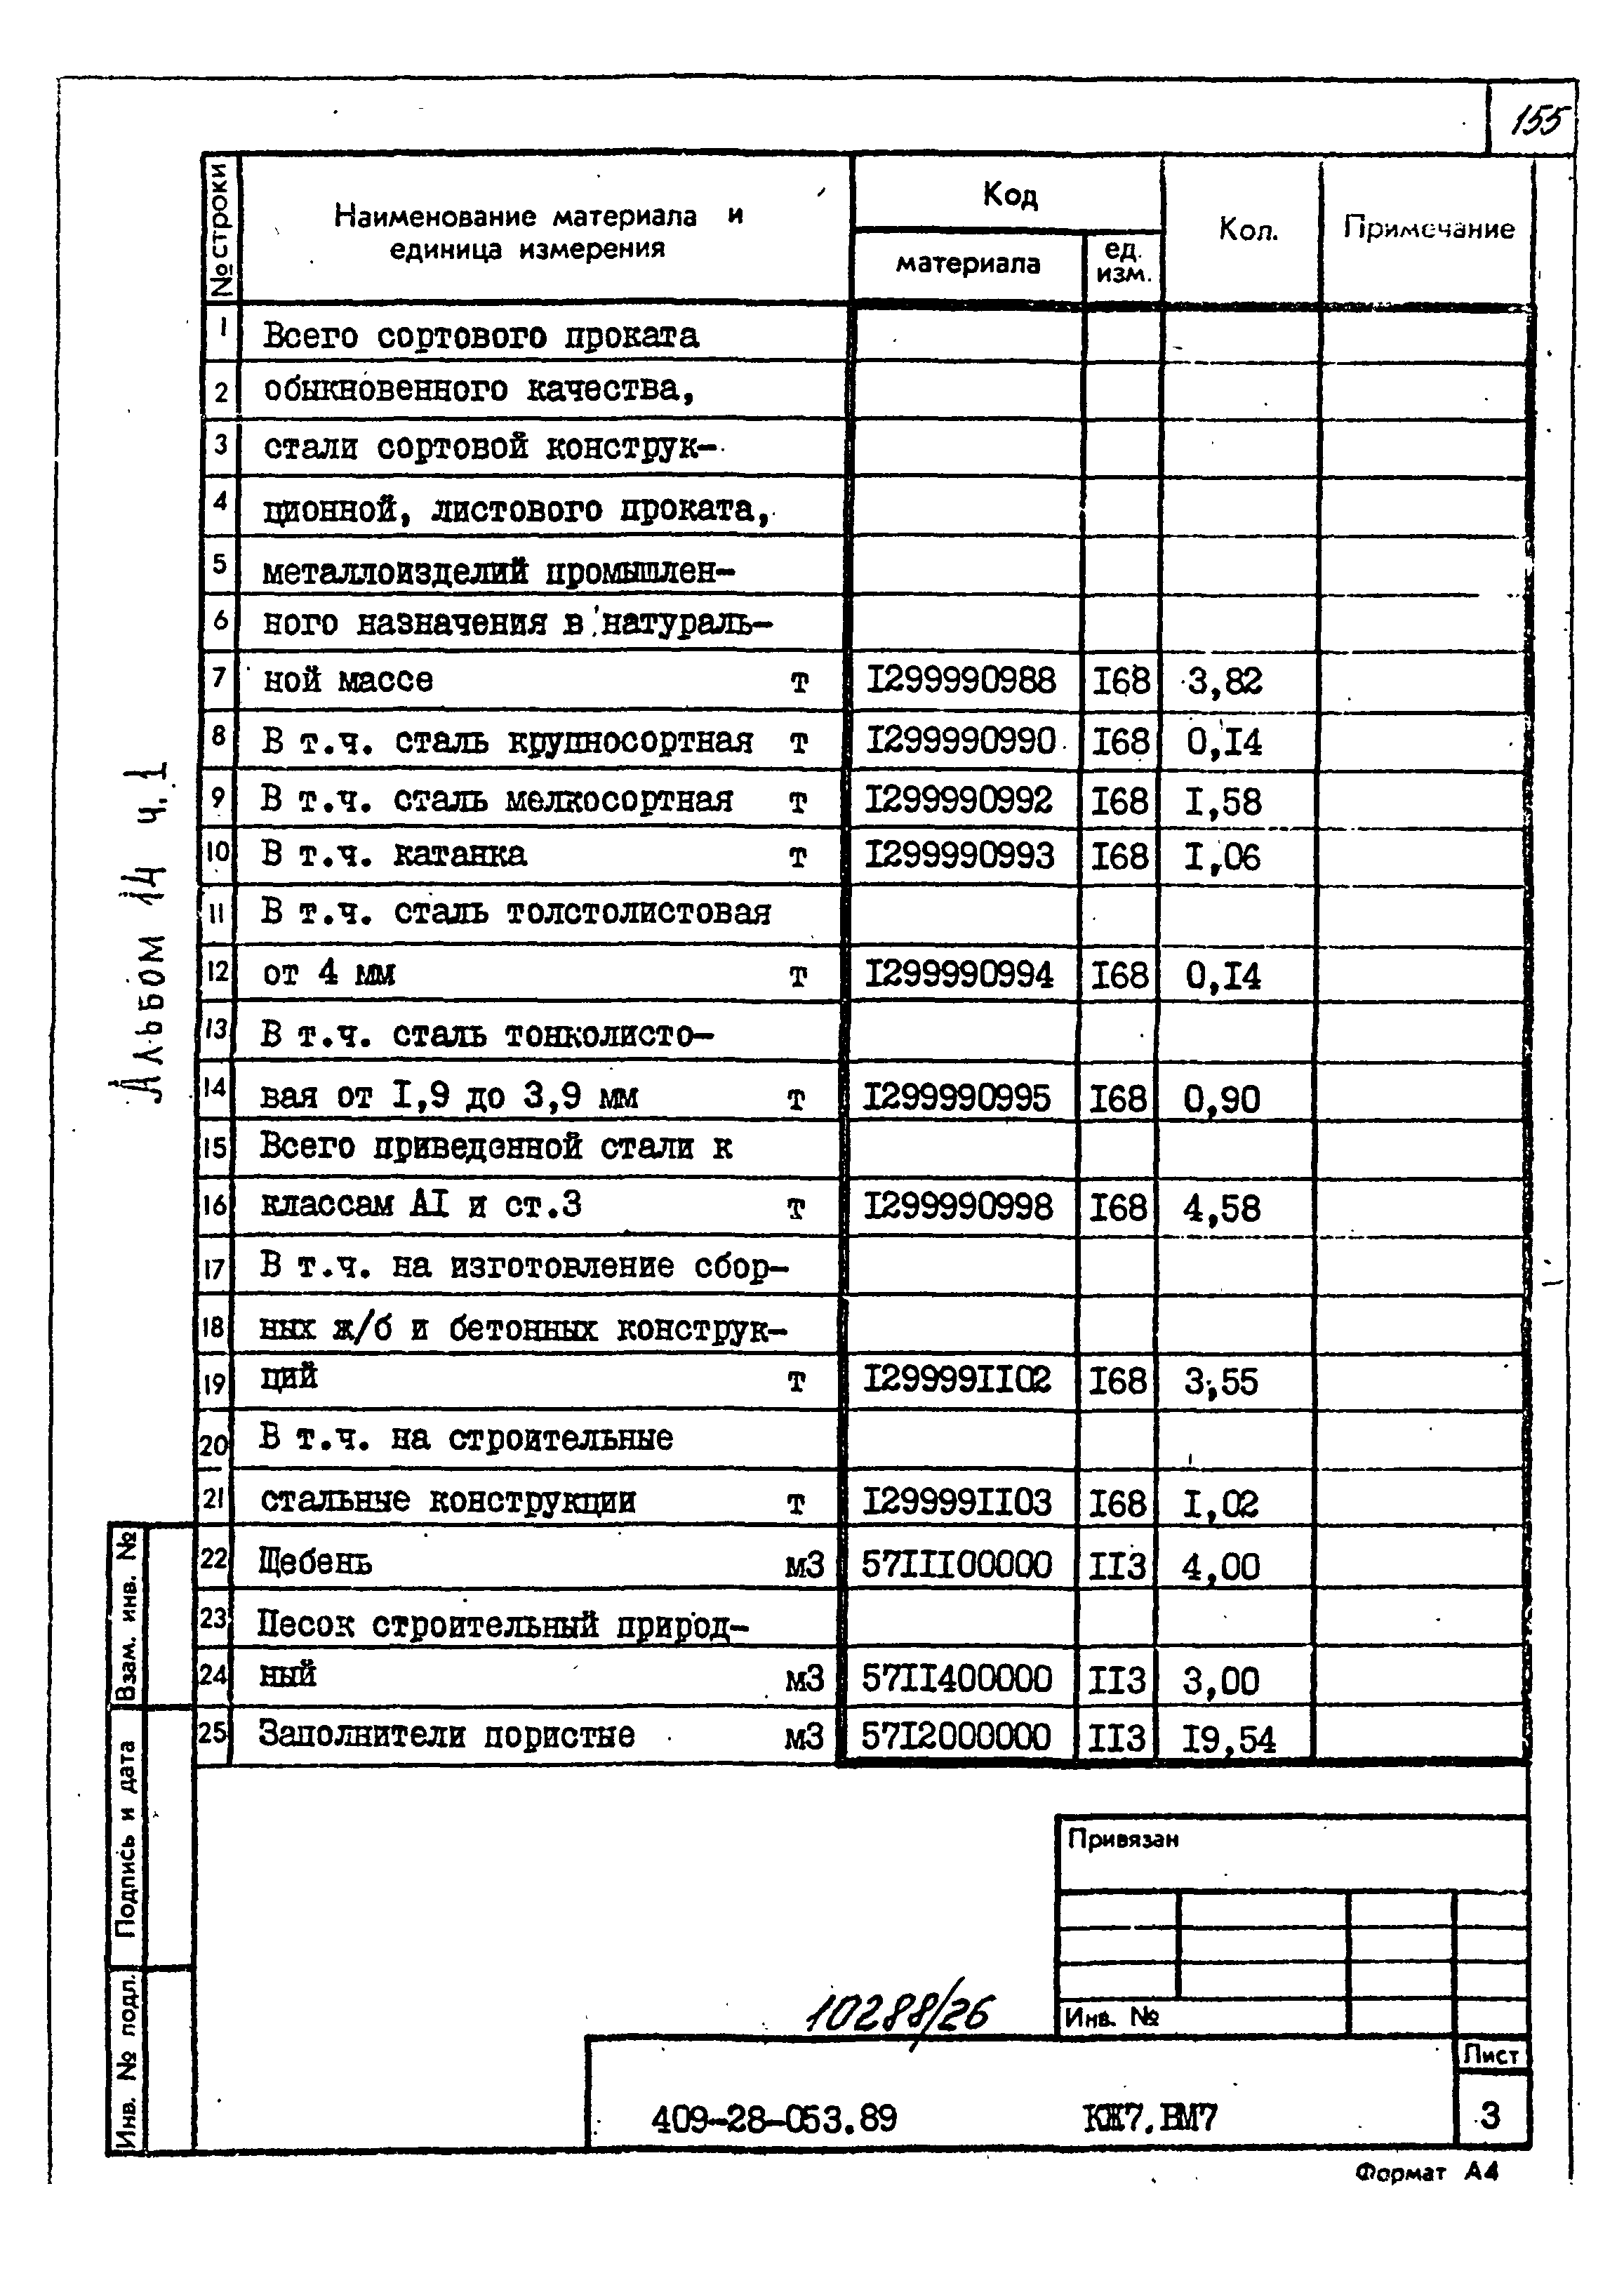 Типовые проектные решения 409-28-053.89